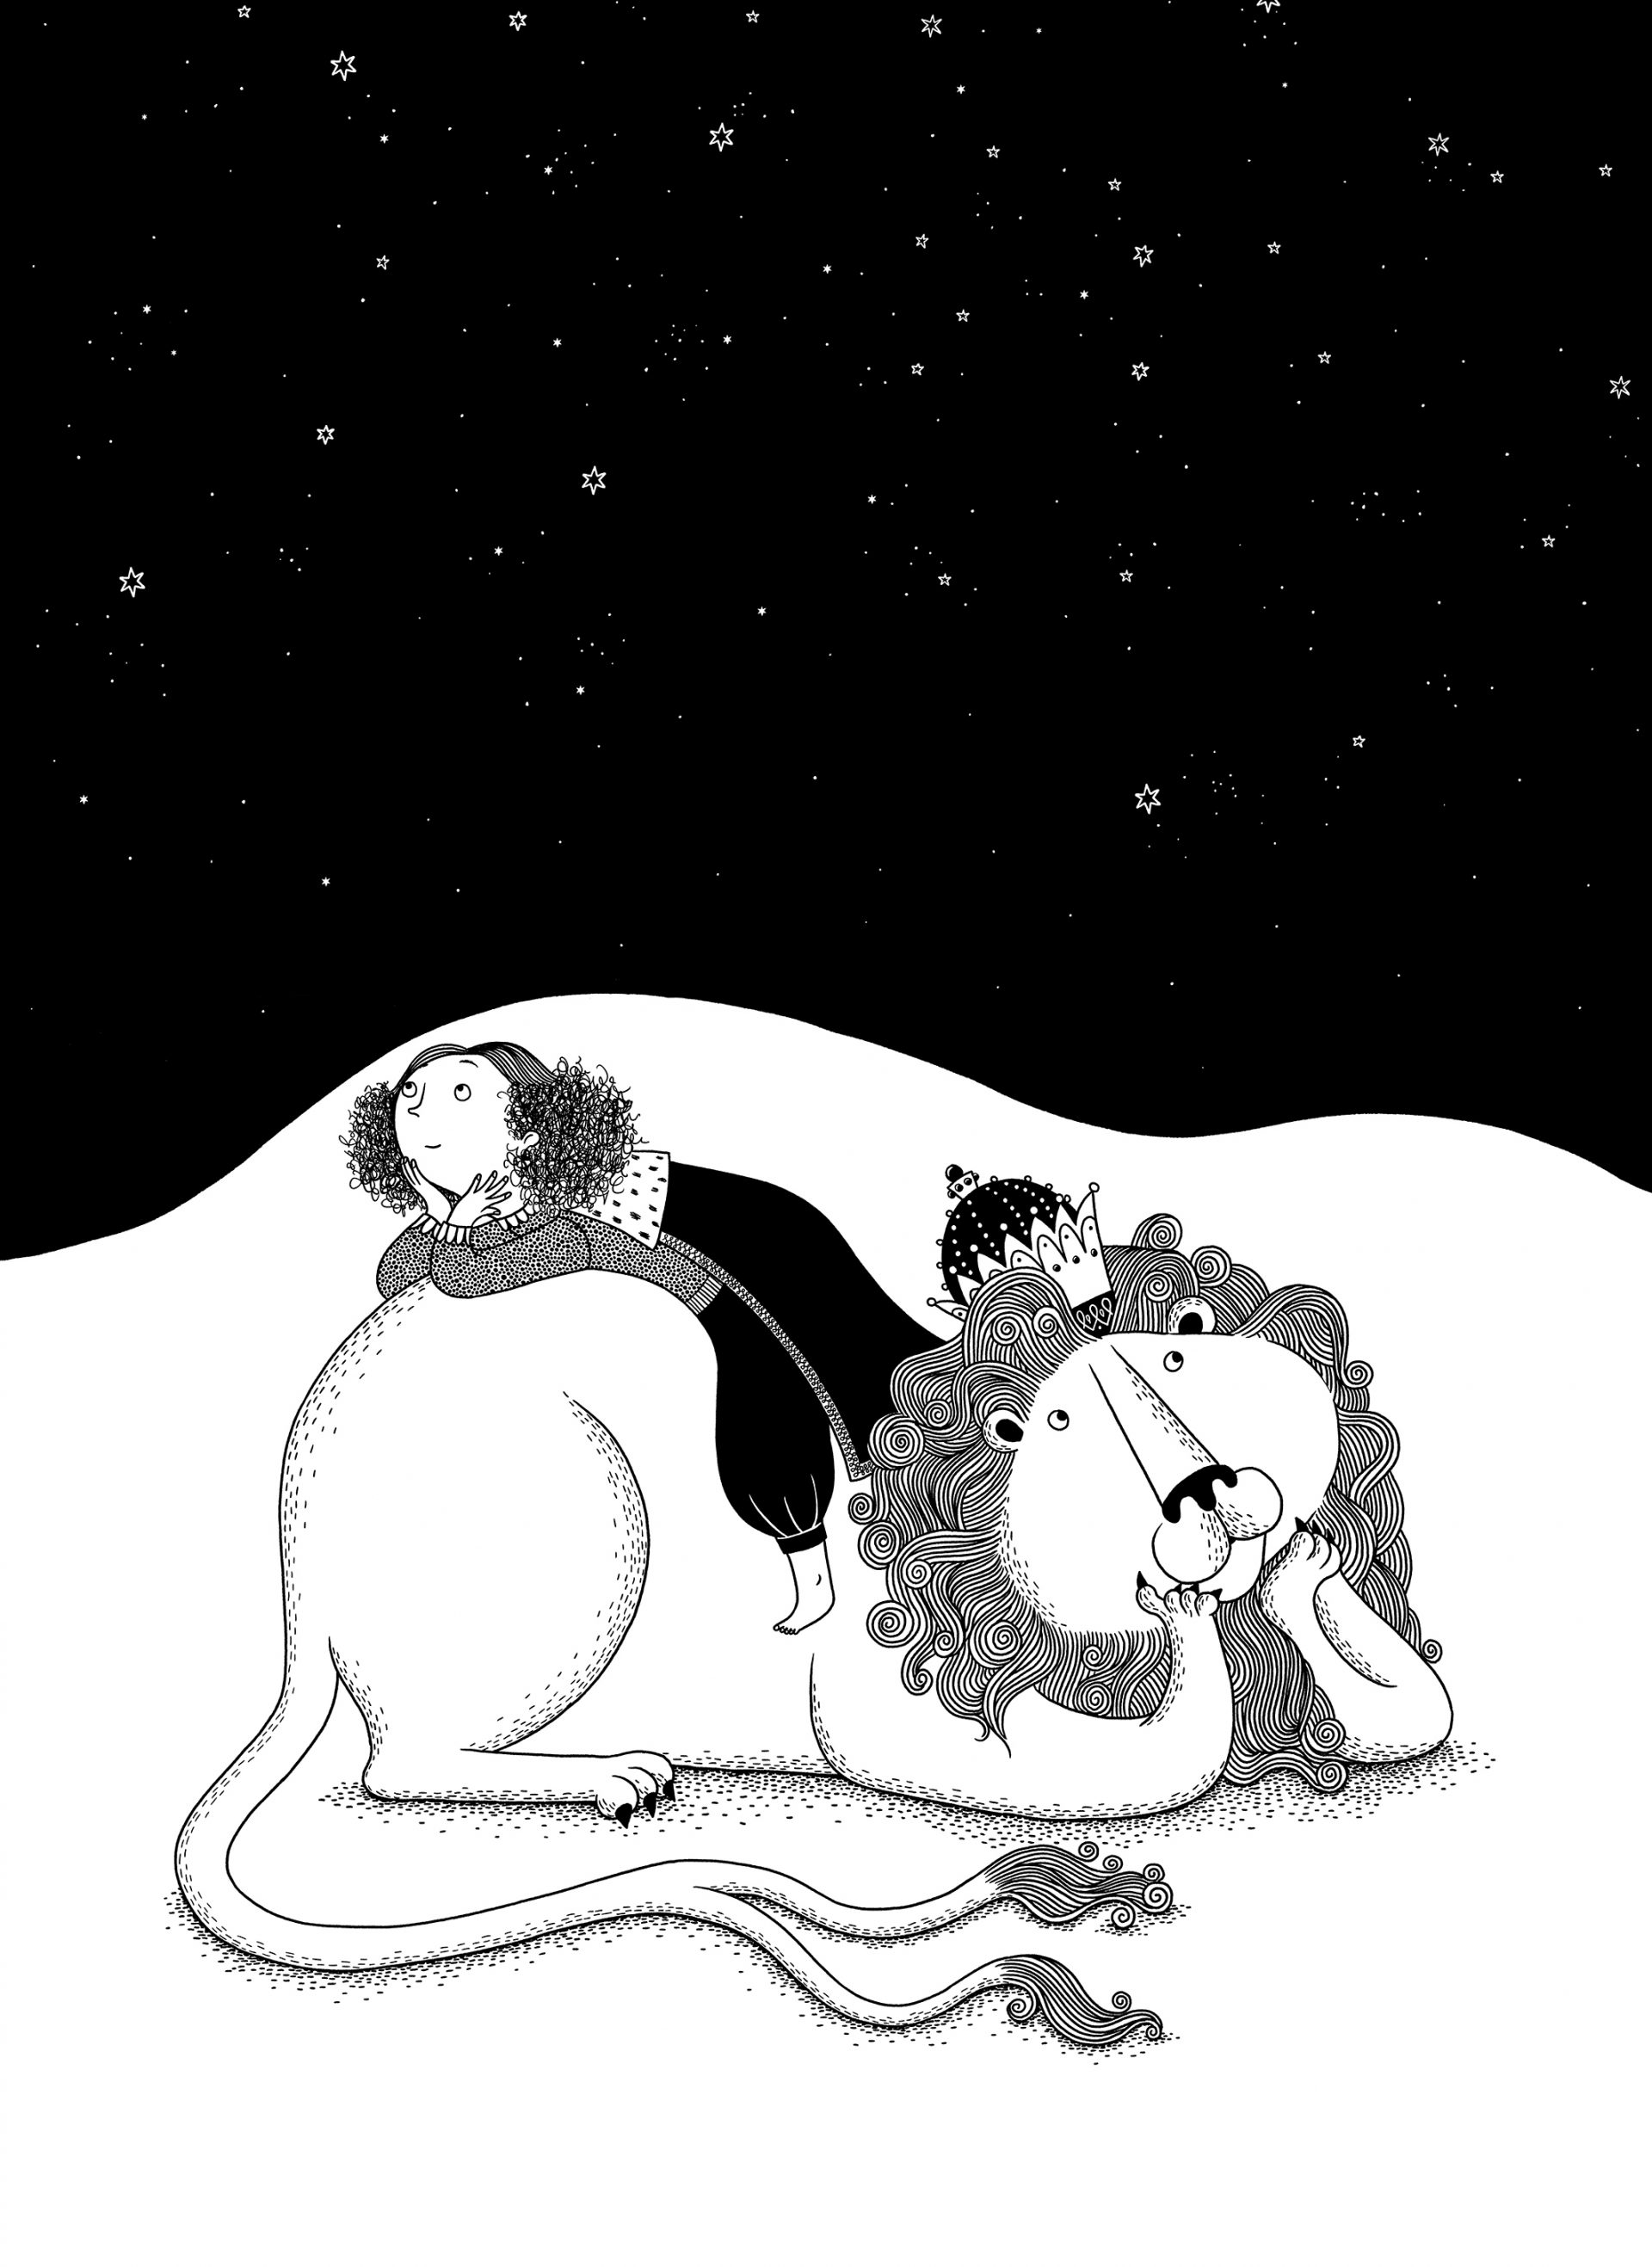 Illustration i svart och vitt med en flicka som ligger på en lejon och kollar upp mot stjärnhimmelen